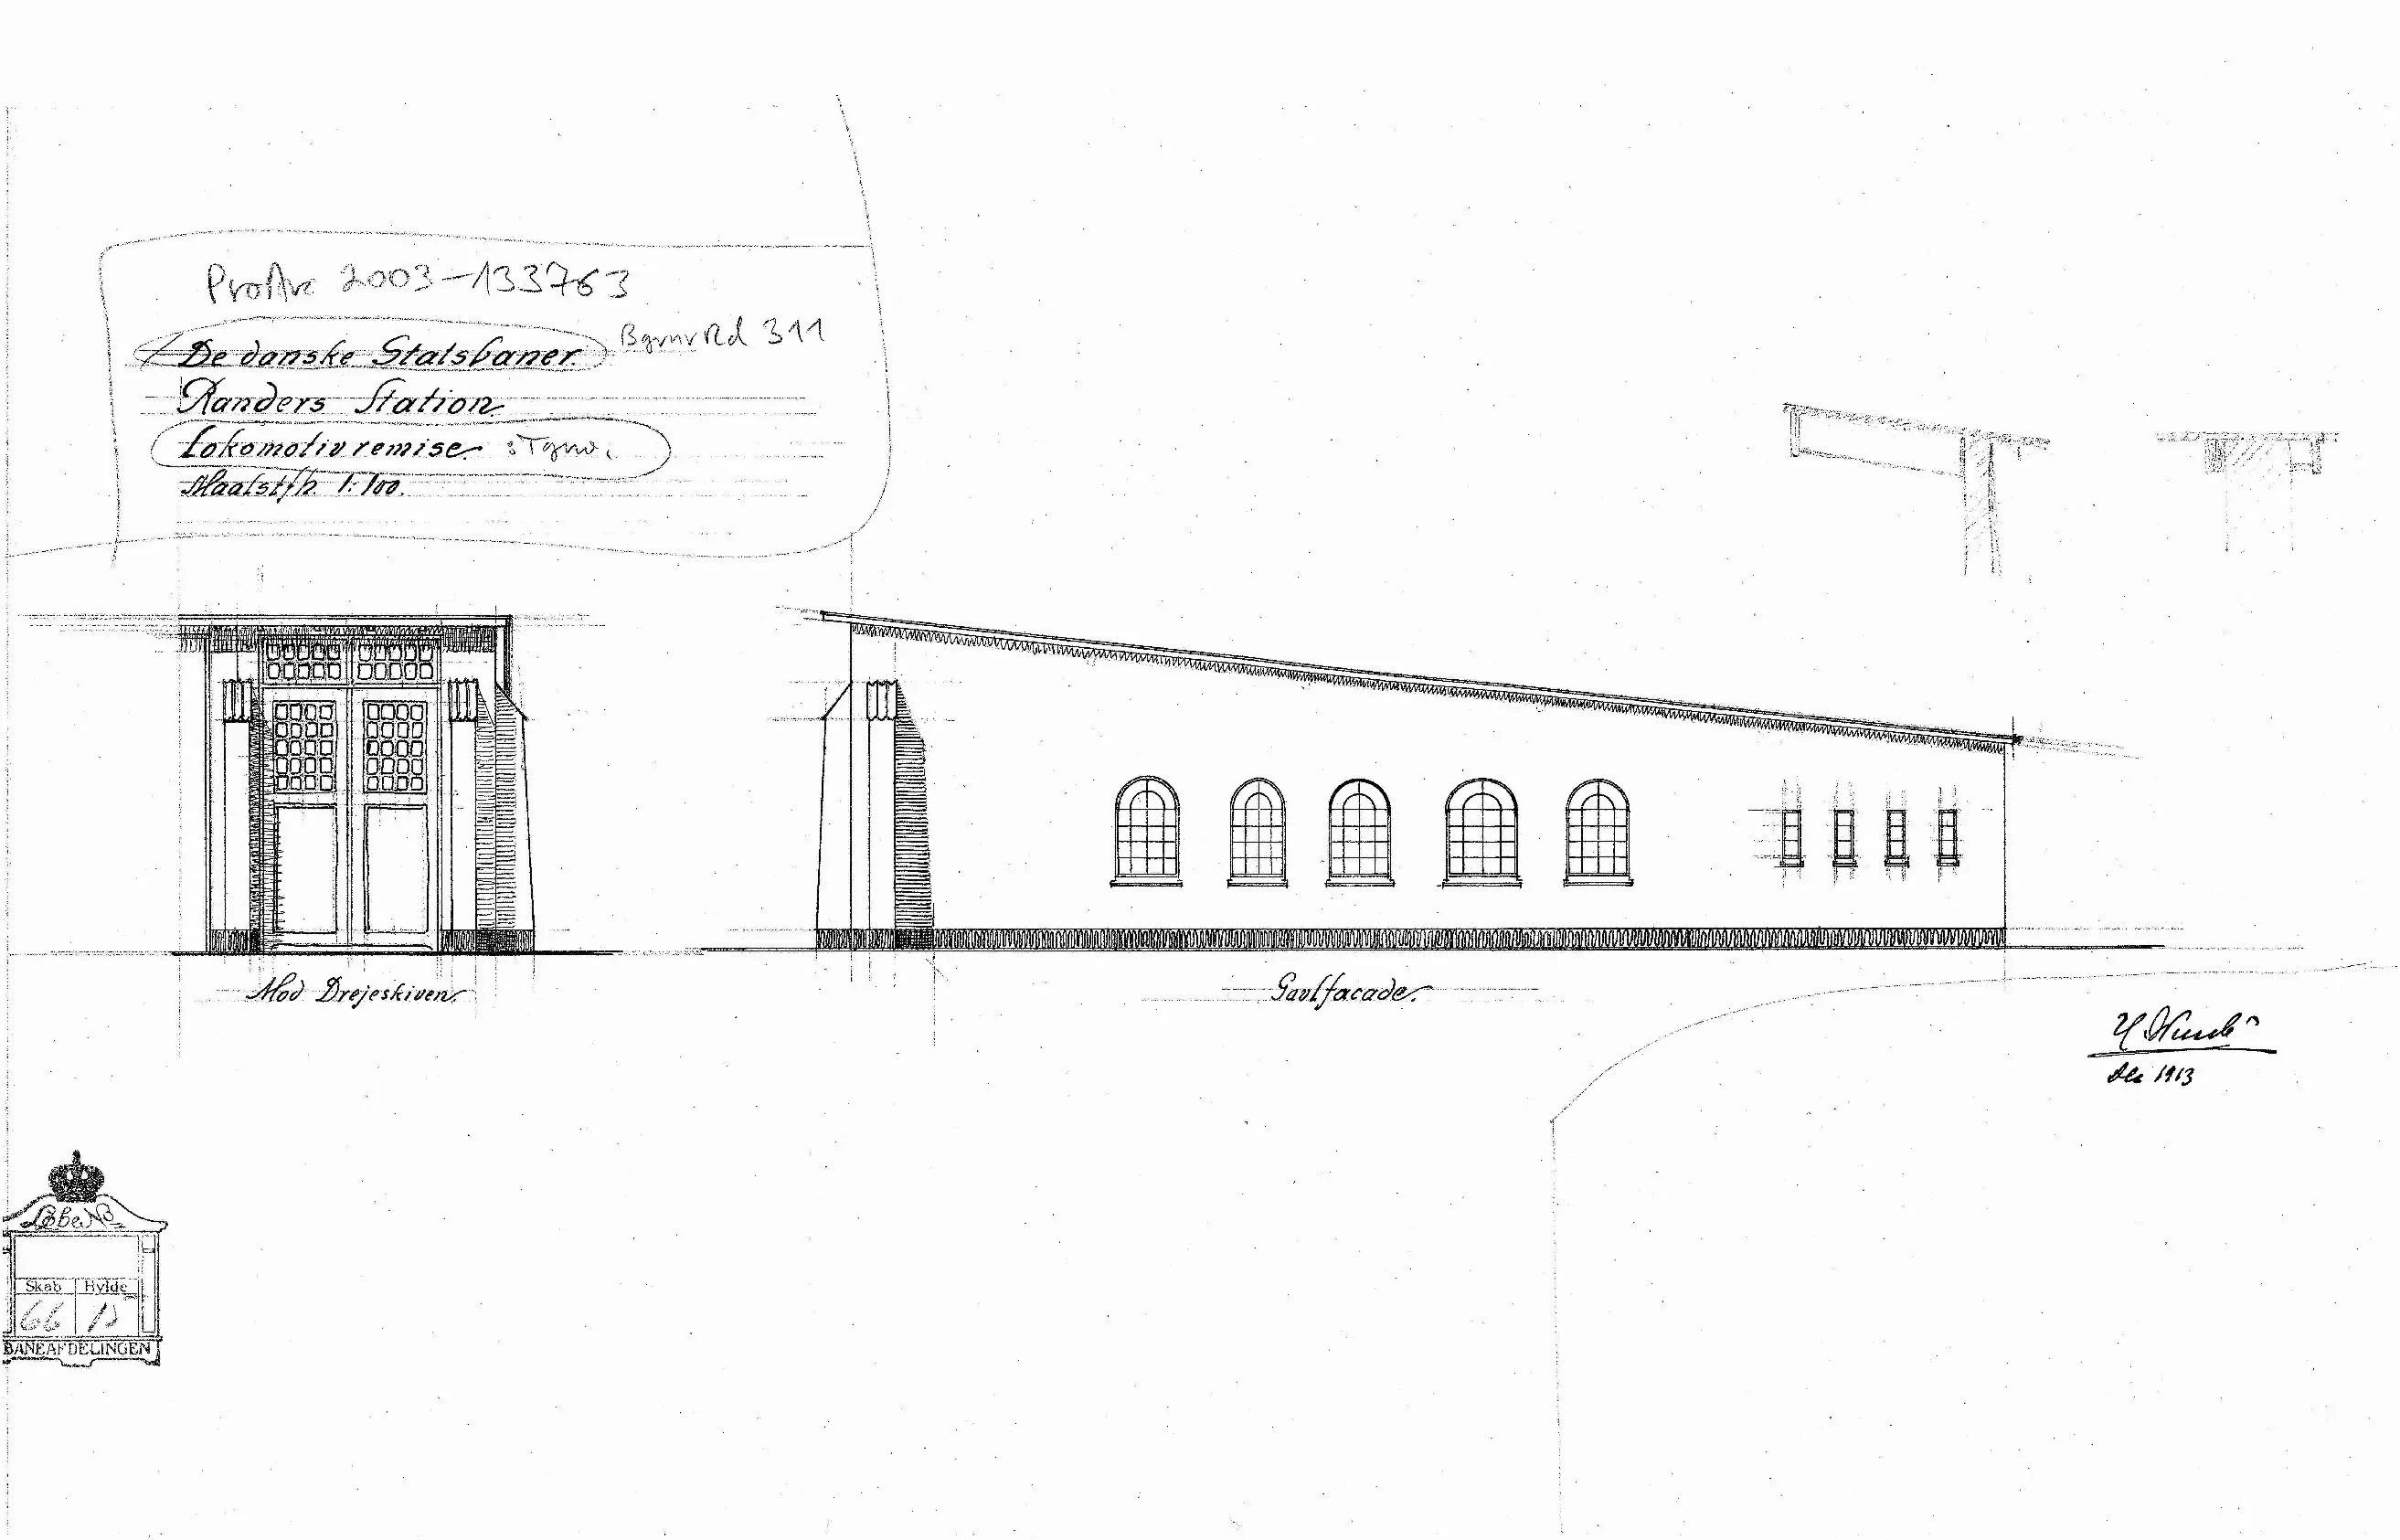 Tegning af Randers Stations remise.